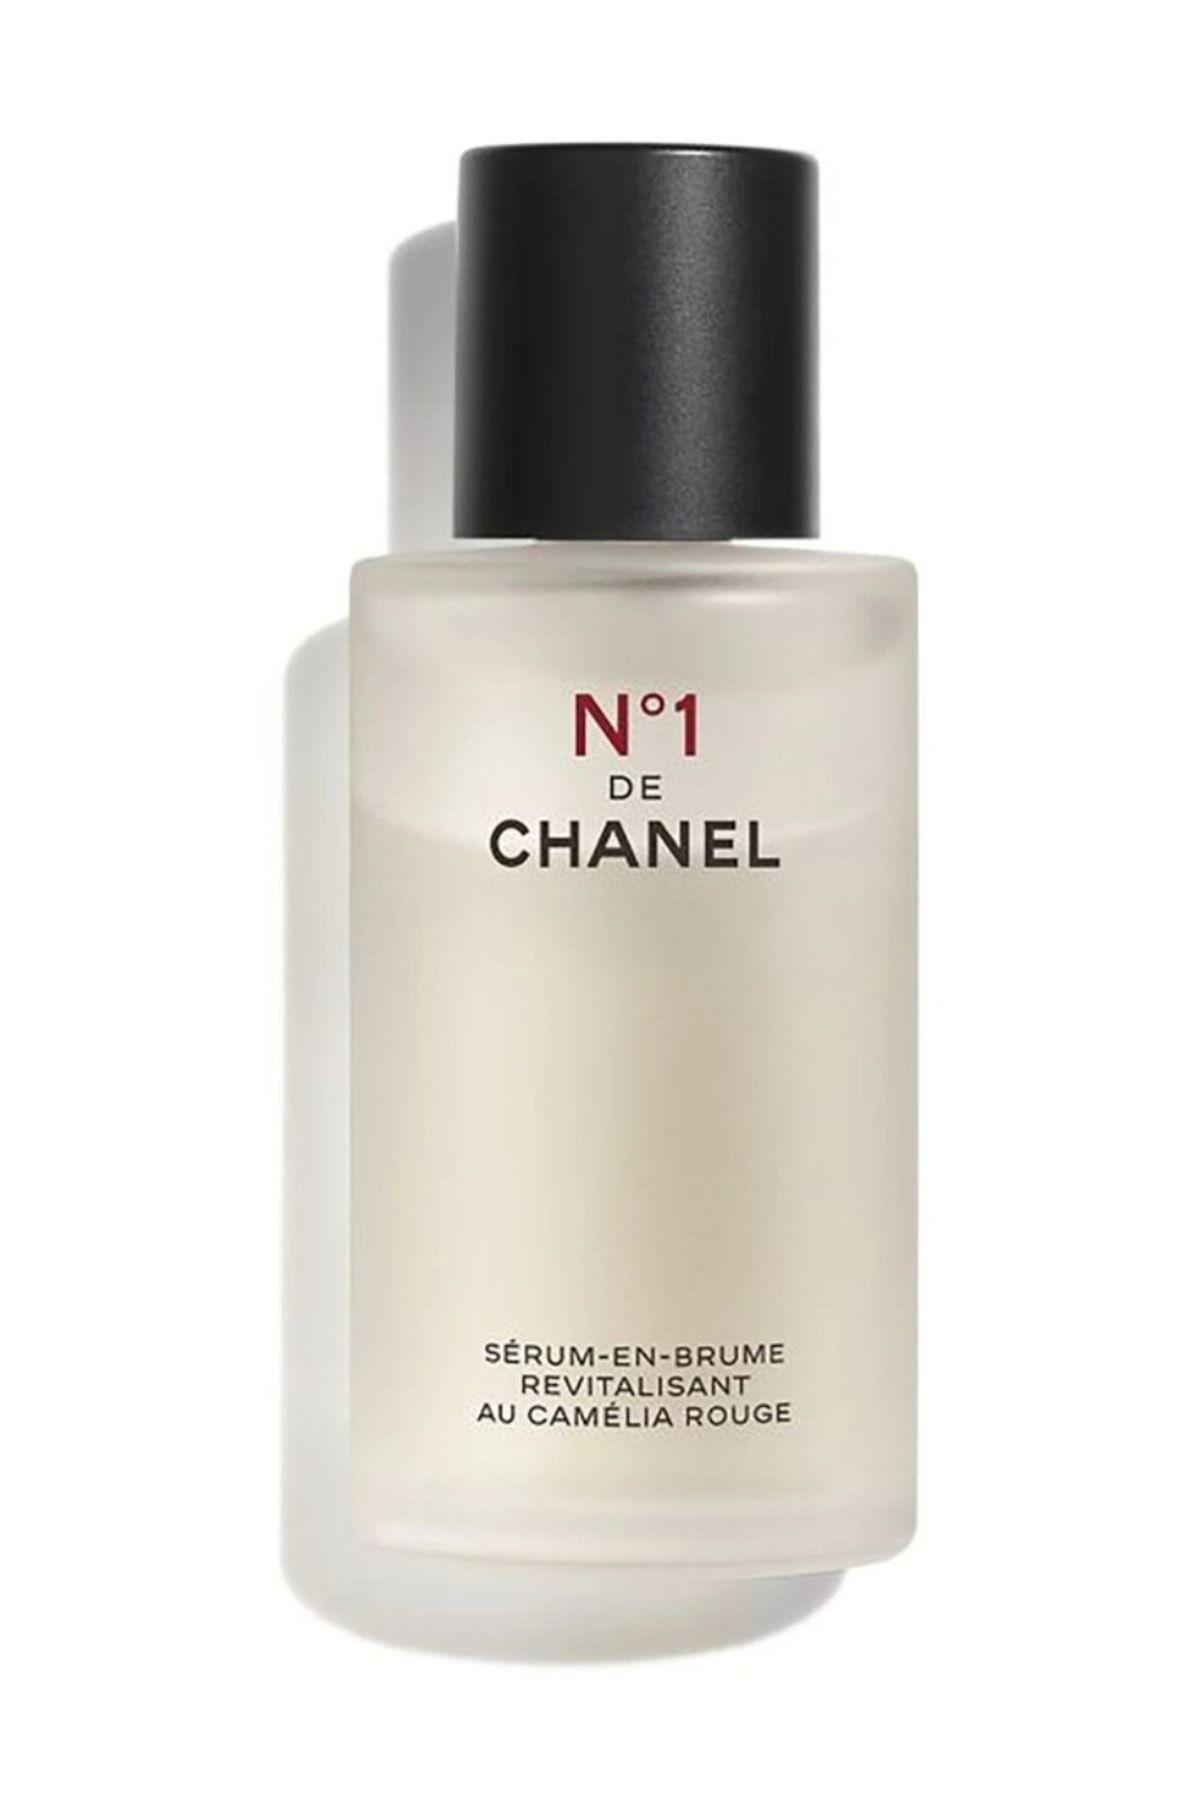 Chanel N°1 De Revitalizing Serum-ın-mist 50 ml